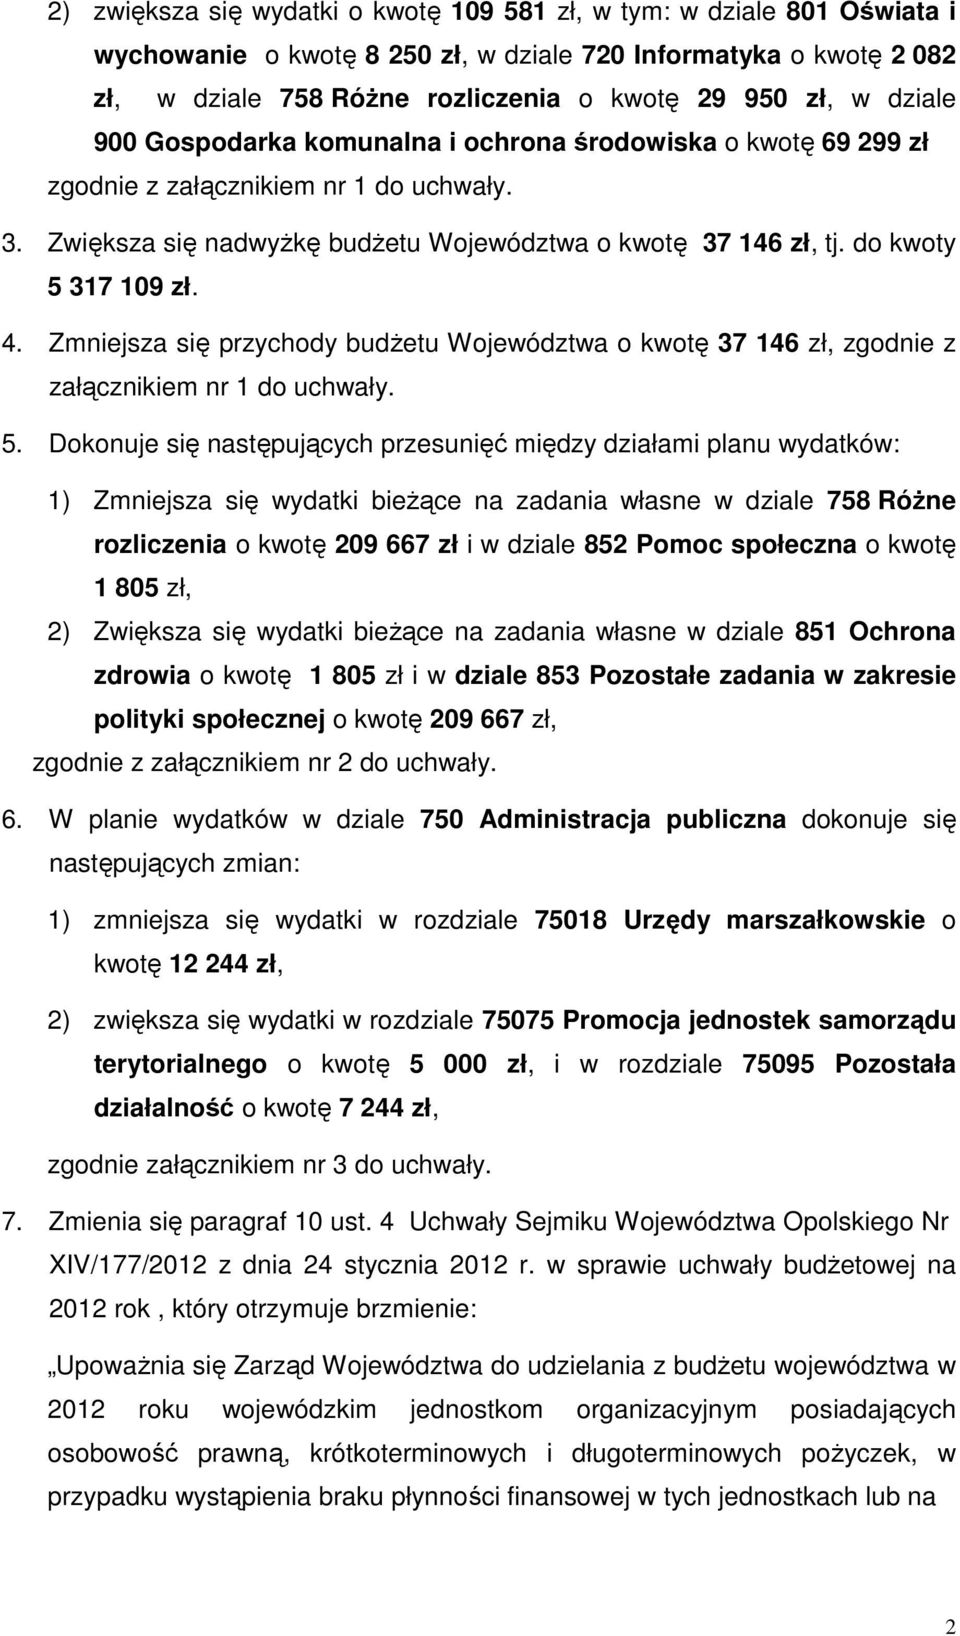 Zmniejsza się przychody budŝetu Województwa o kwotę 37 146 zł, zgodnie z załącznikiem nr 1 do uchwały. 5.